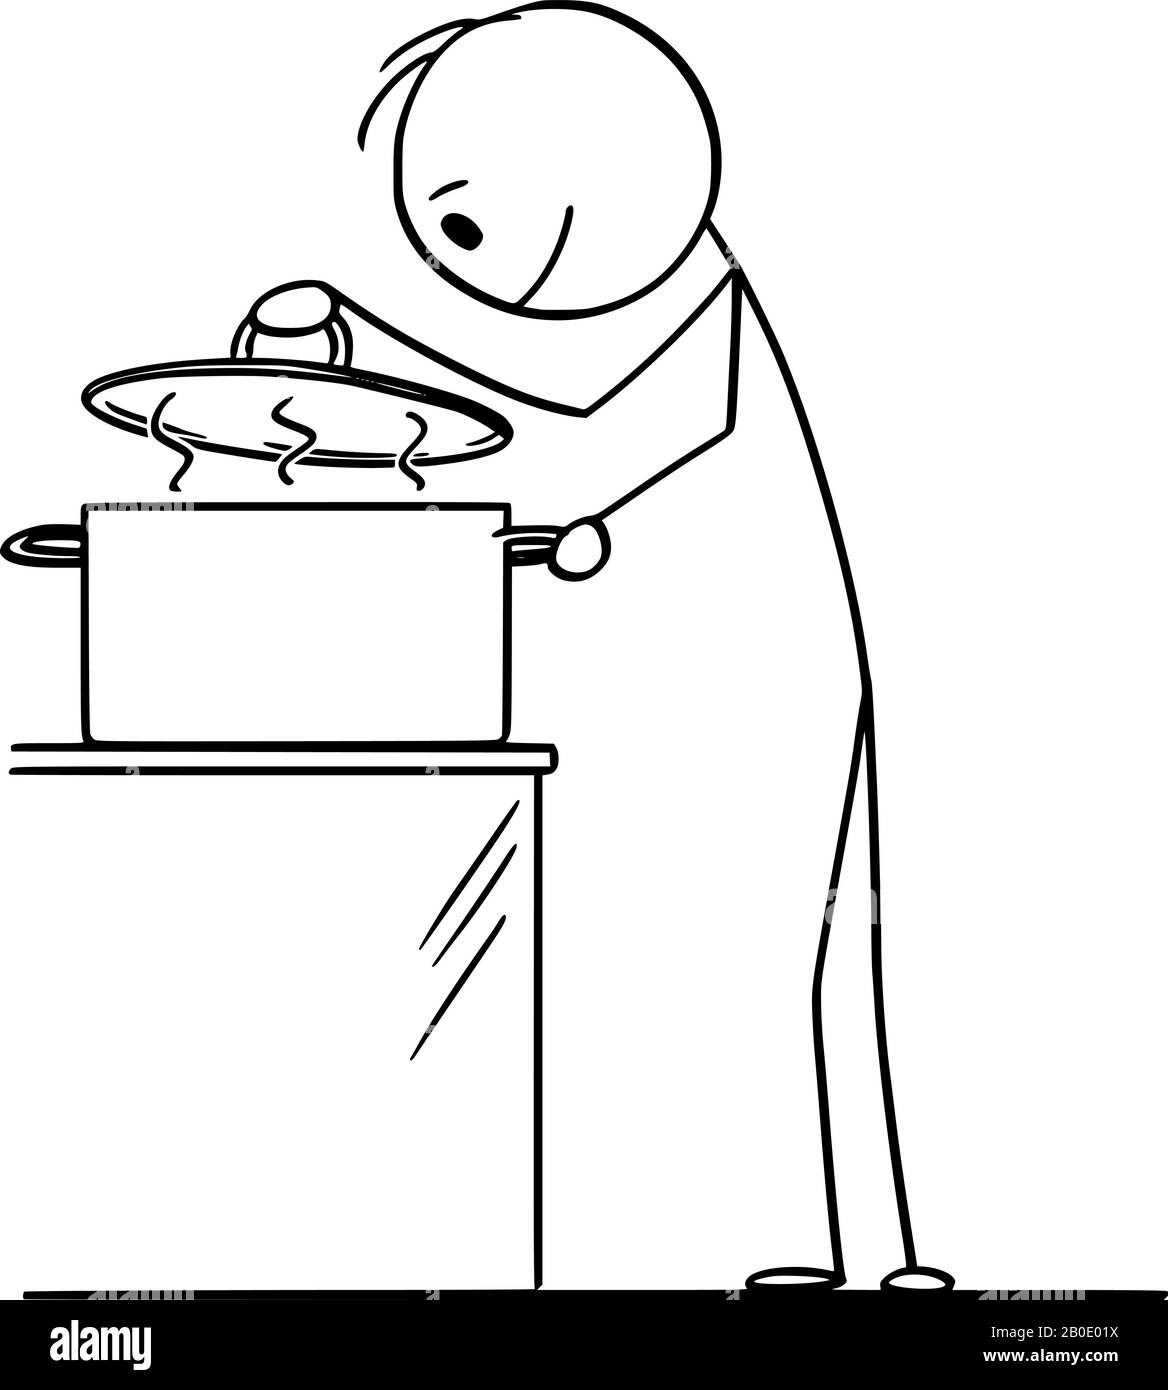 Vector Cartoon Stick Figure Zeichnung konzeptuelle Illustration von hungrigen neugierigen Menschen oder Koch auf der Suche nach heißer Nahrung in der Kochtopf. Stock Vektor